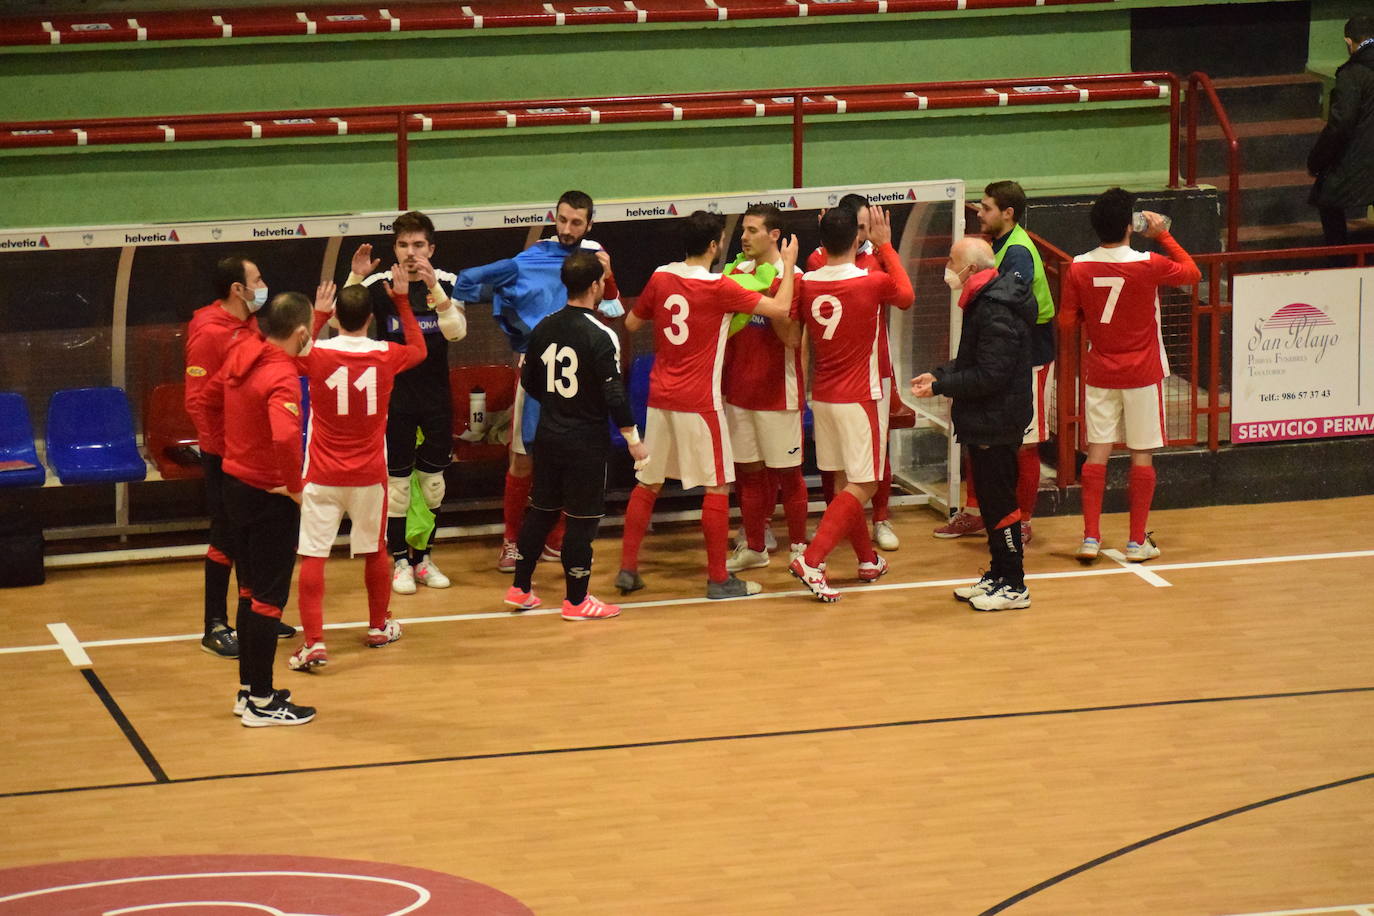 Saludo inicial de los jugadores del Unión Arroyo antes de comenzar el partido en Pontevedra. /Jota de la Fuente